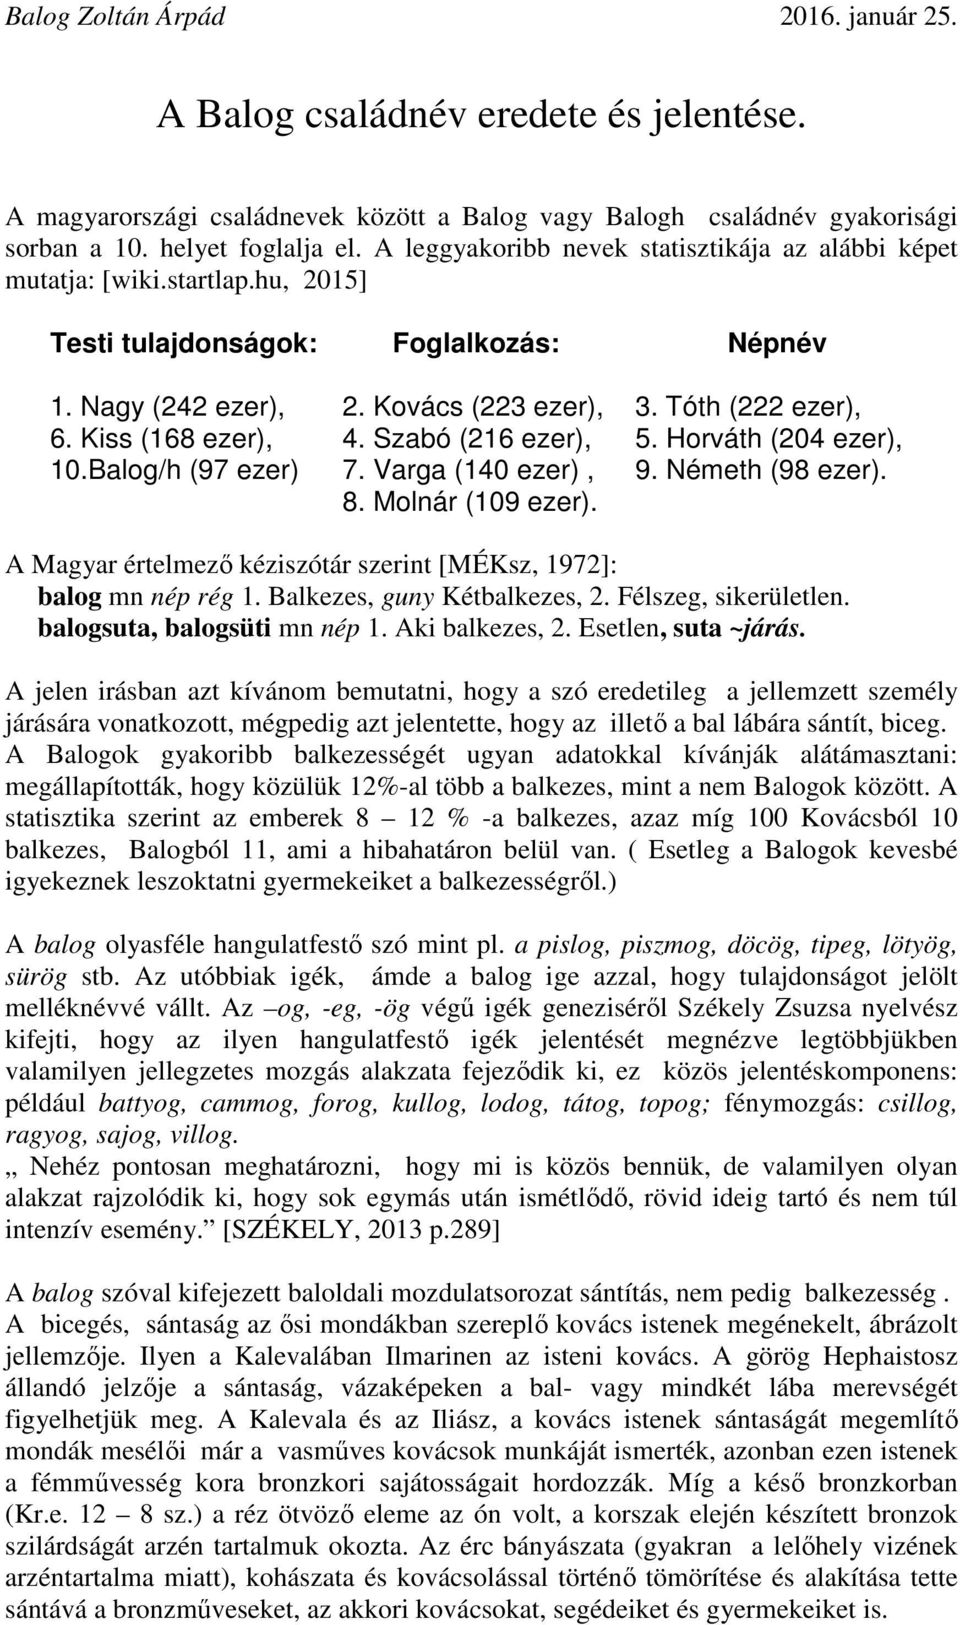 Kovács (223 ezer), 4. Szabó (216 ezer), 7. Varga (140 ezer), 8. Molnár (109 ezer). 3. Tóth (222 ezer), 5. Horváth (204 ezer), 9. Németh (98 ezer).